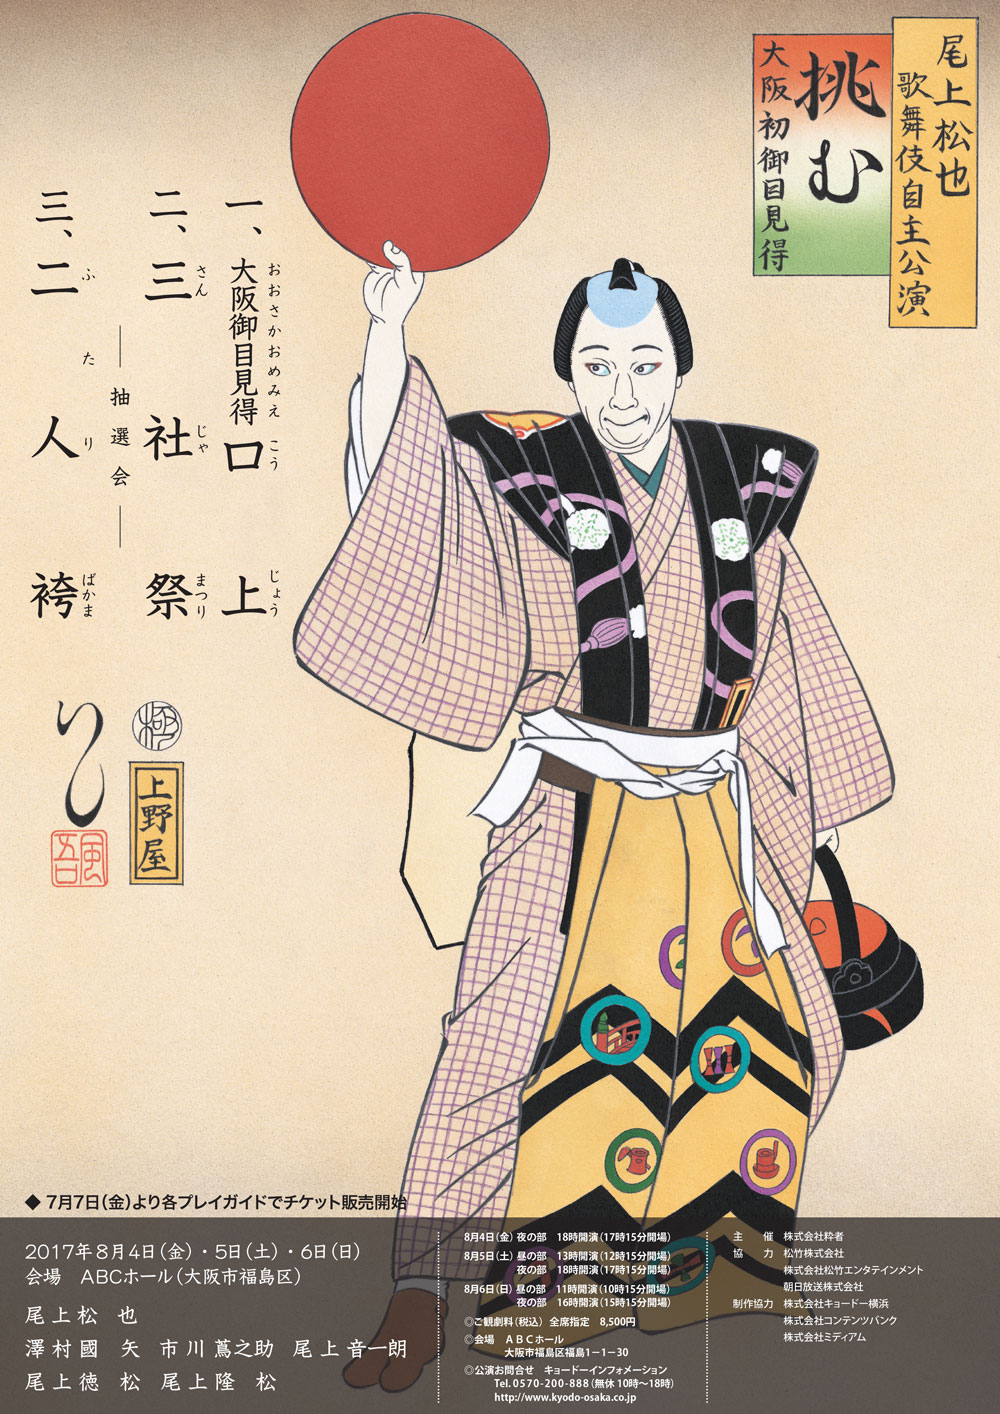 松也歌舞伎自主公演「挑む Vol.9」のお知らせ